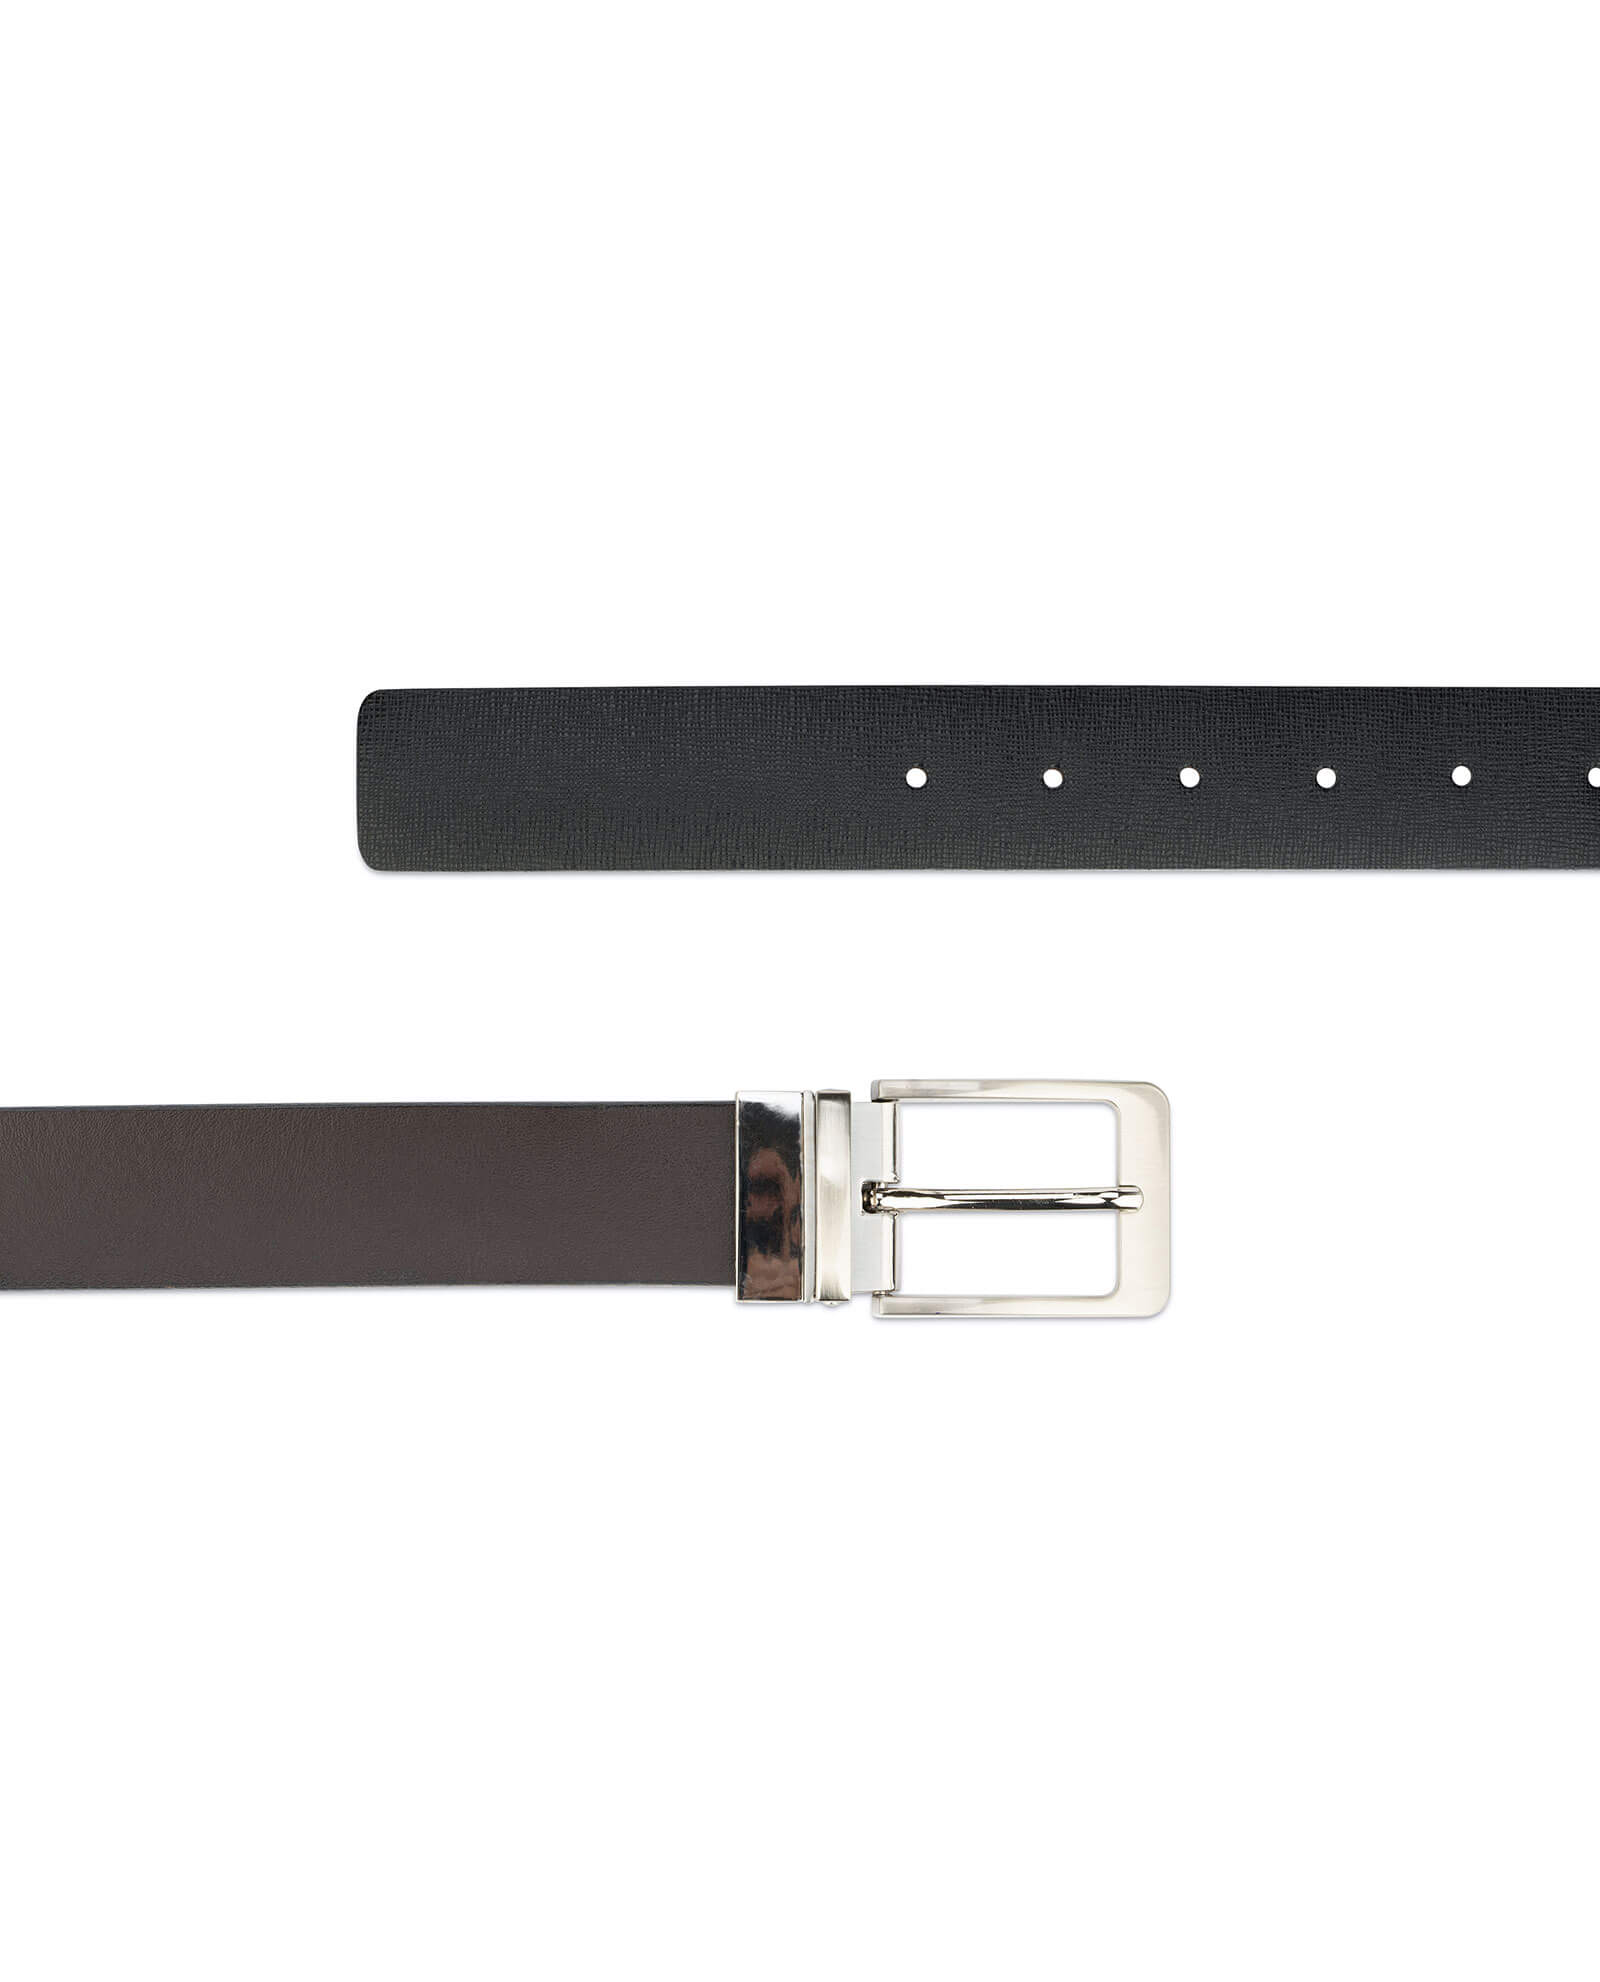 Buy Men's Belt Reversible | Saffiano Leather 3.5 cm | Capo Pelle